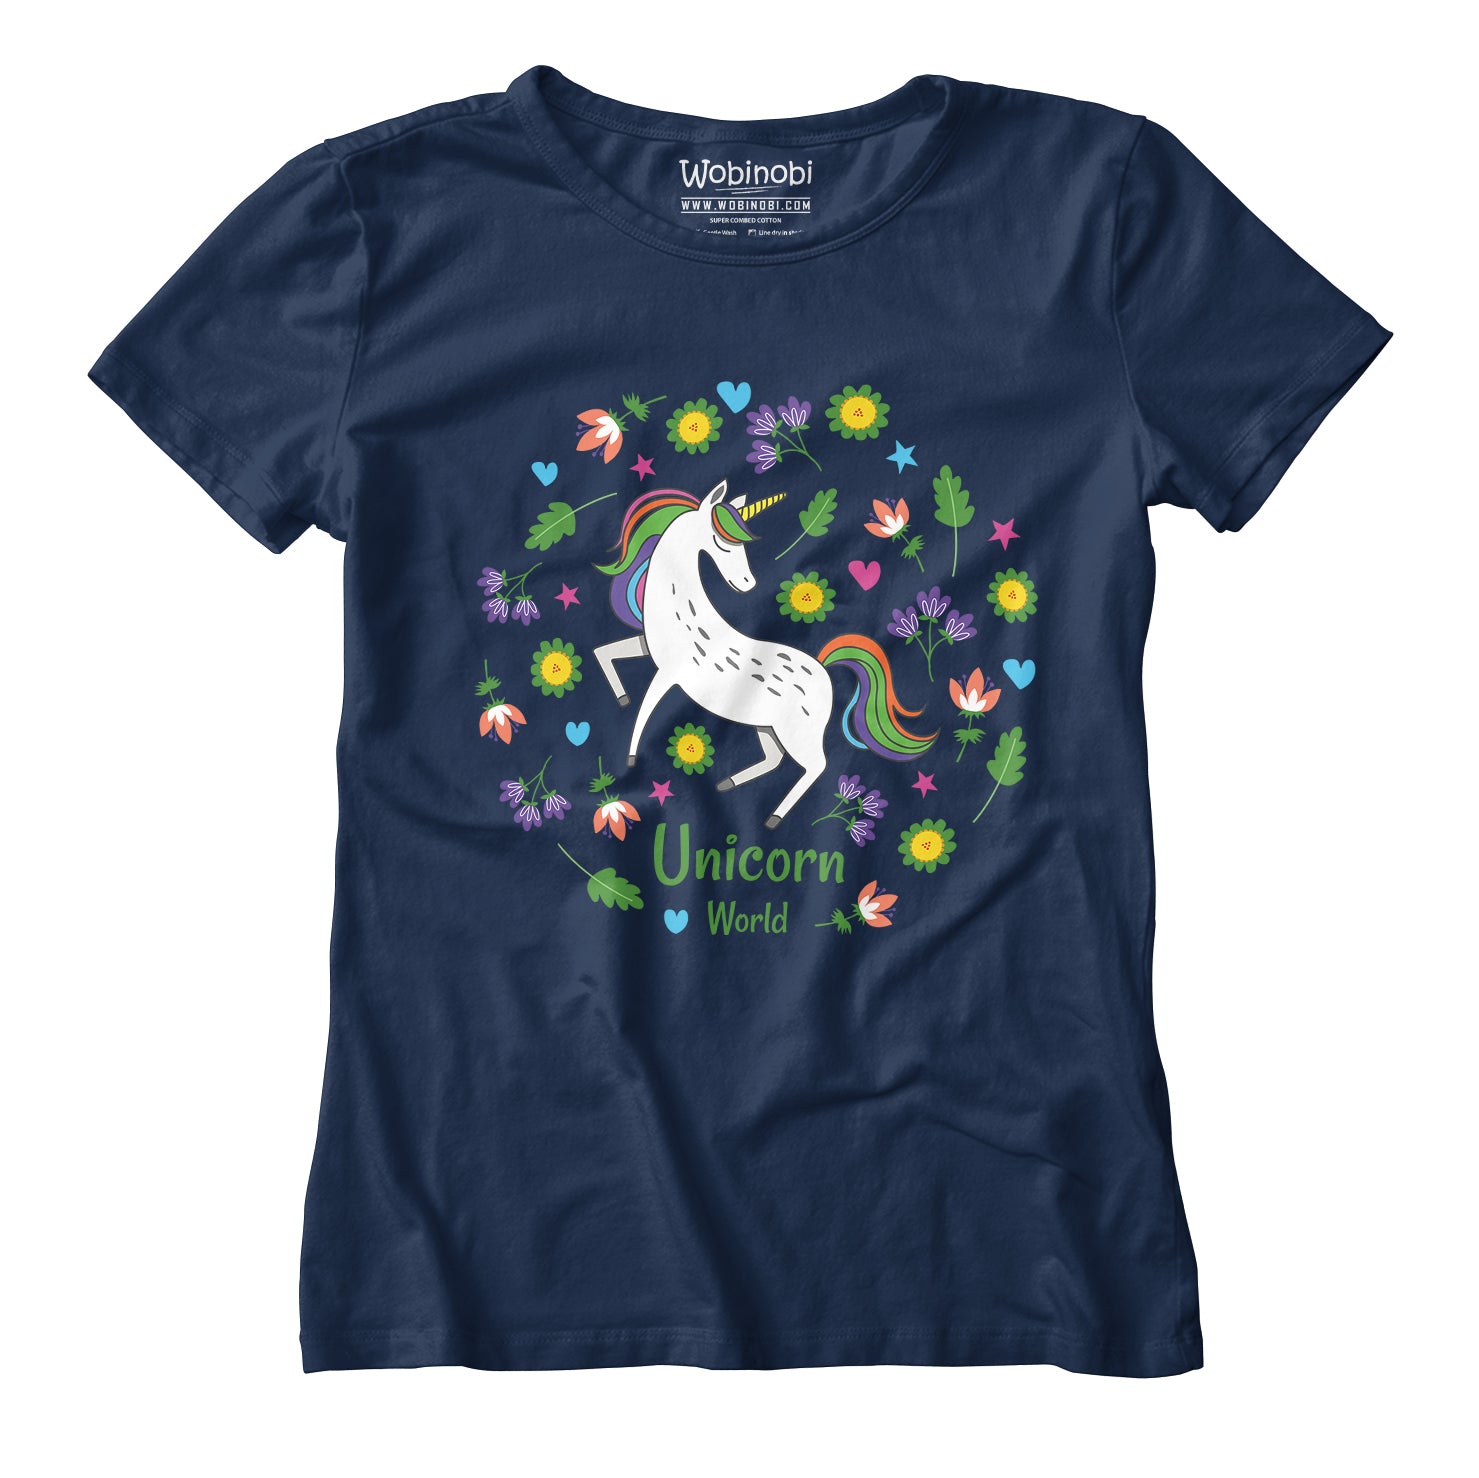 100% Girls – Cotton T-Shirt World Wobinobi Unicorn